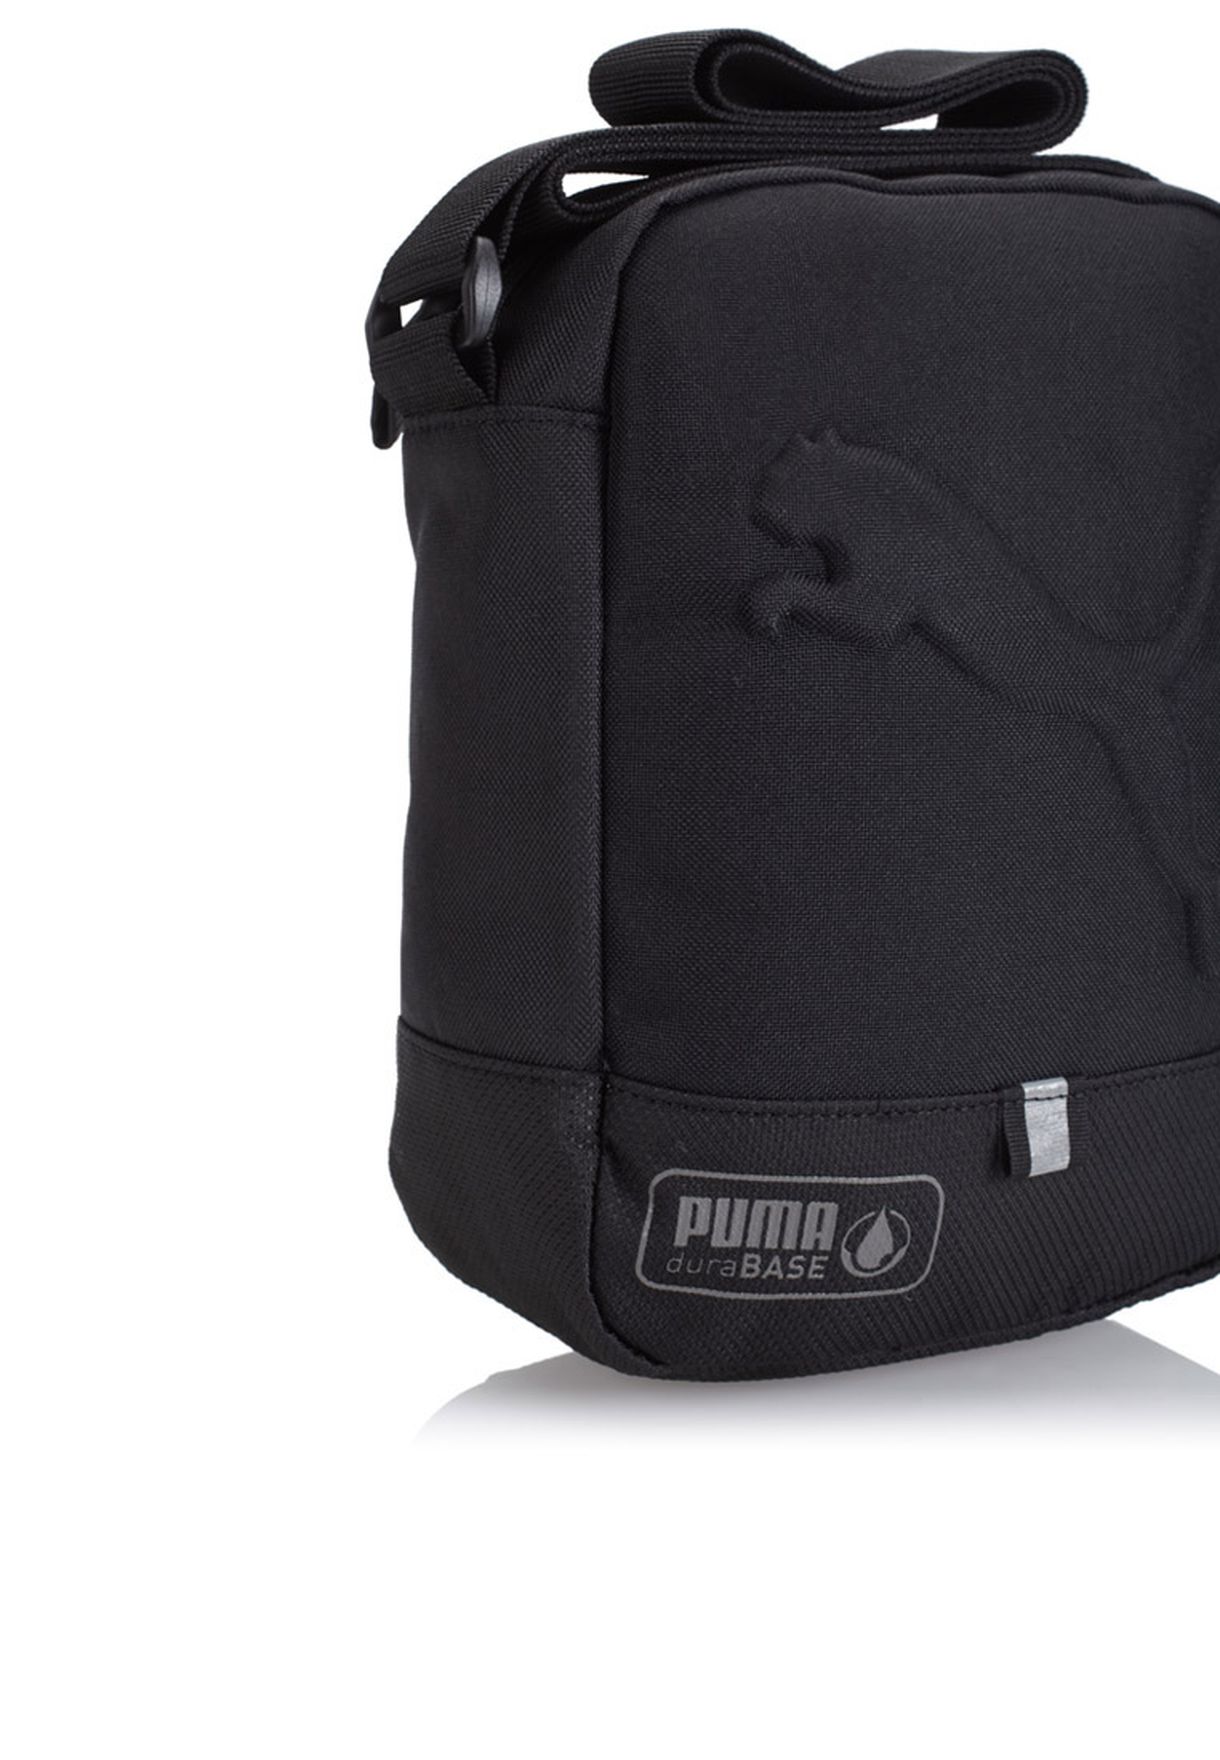 puma buzz portable